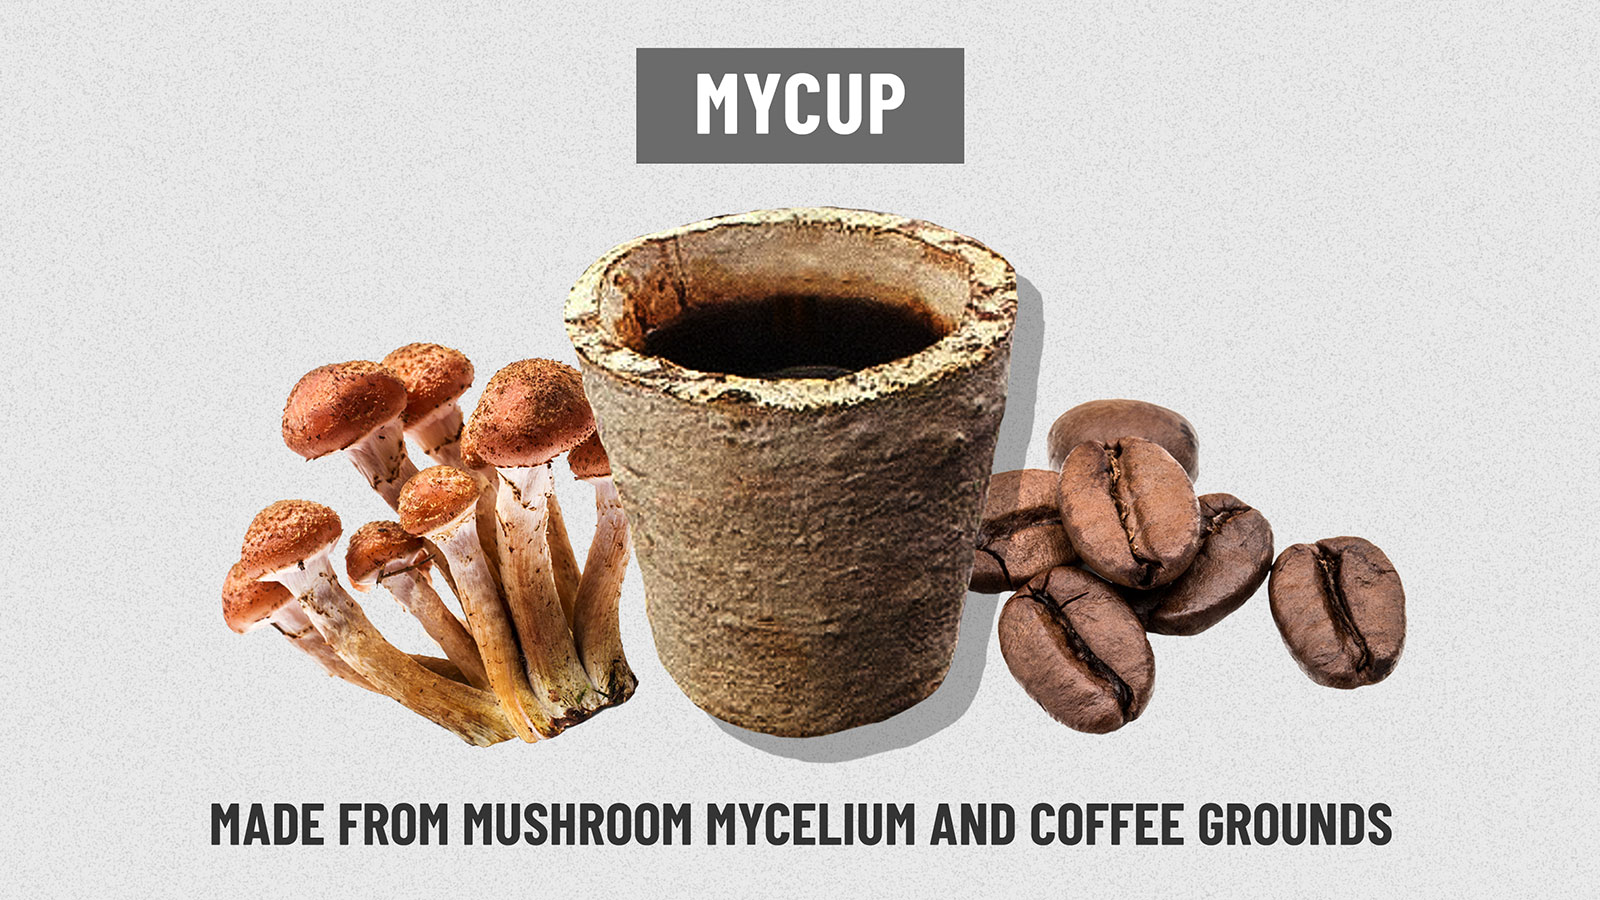 https://cdn.cnn.com/cnn/interactive/2019/02/business/starbucks-cup-problem/media/cups-centerpiece-gallery_MyCUP.jpg